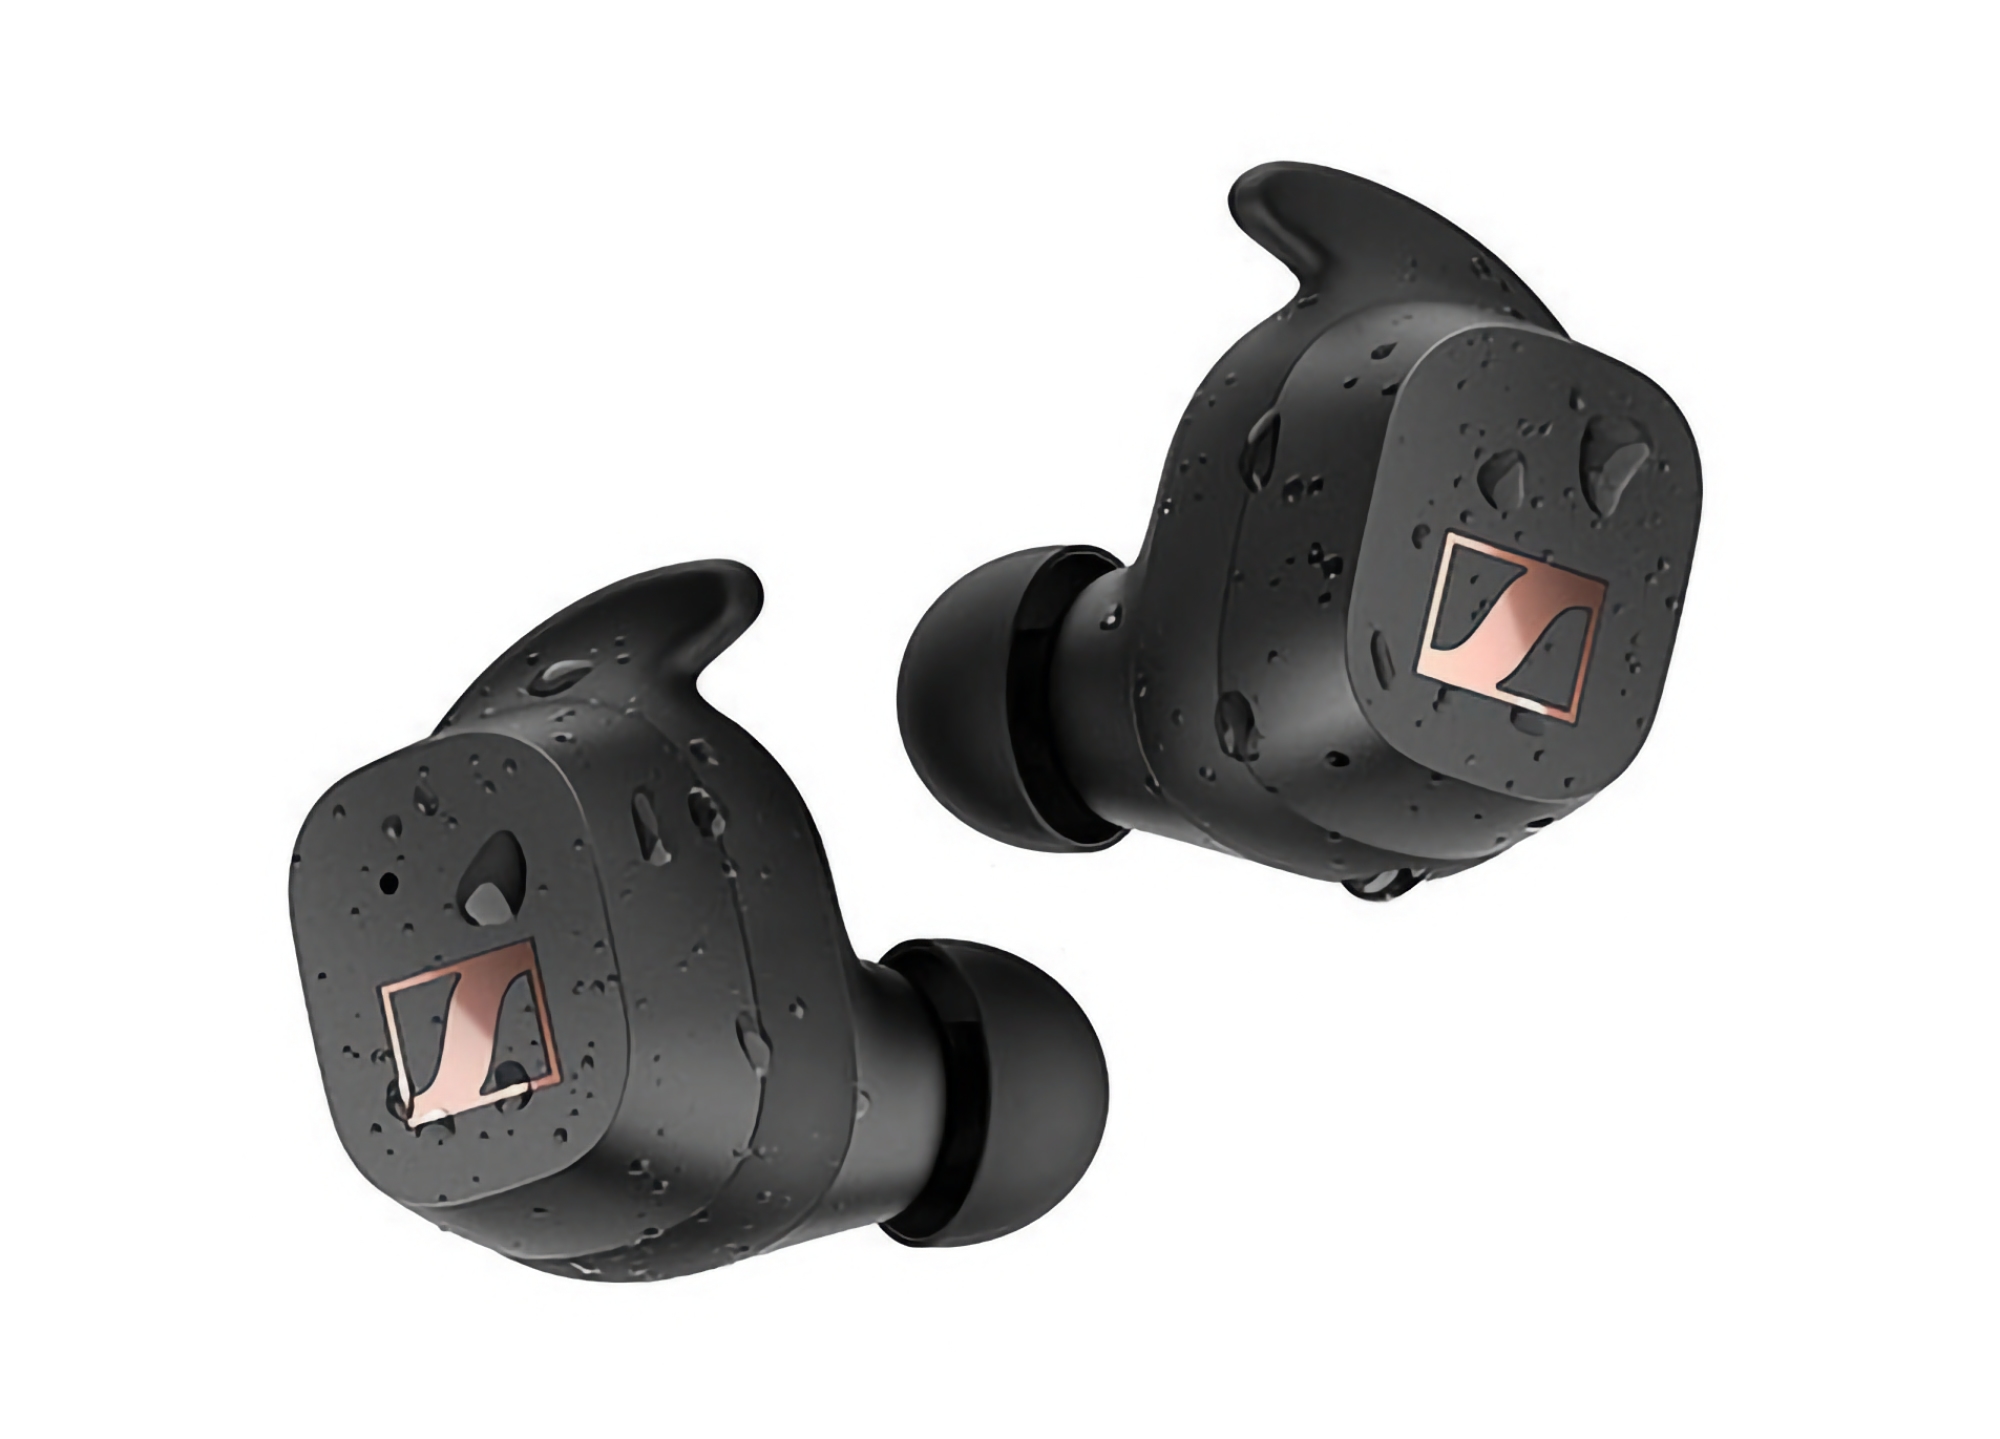 Sennheiser Sport True Wireless en Amazon: Auriculares TWS con protección IP54 y hasta 27 de autonomía con 50€ de descuento